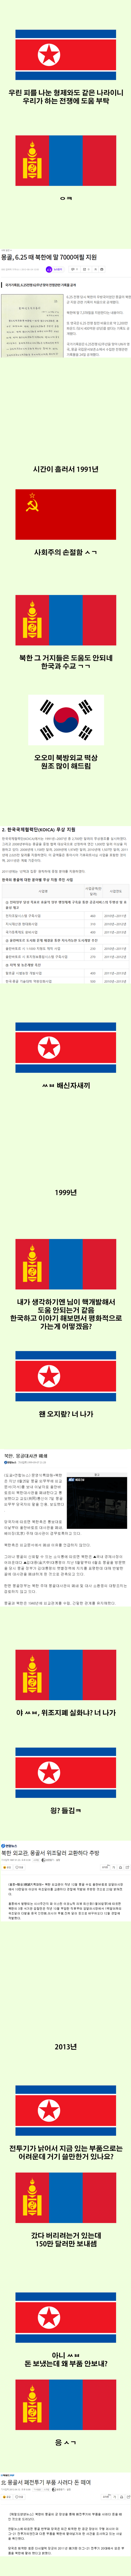 モンゴルと北朝鮮のティキタカjpg